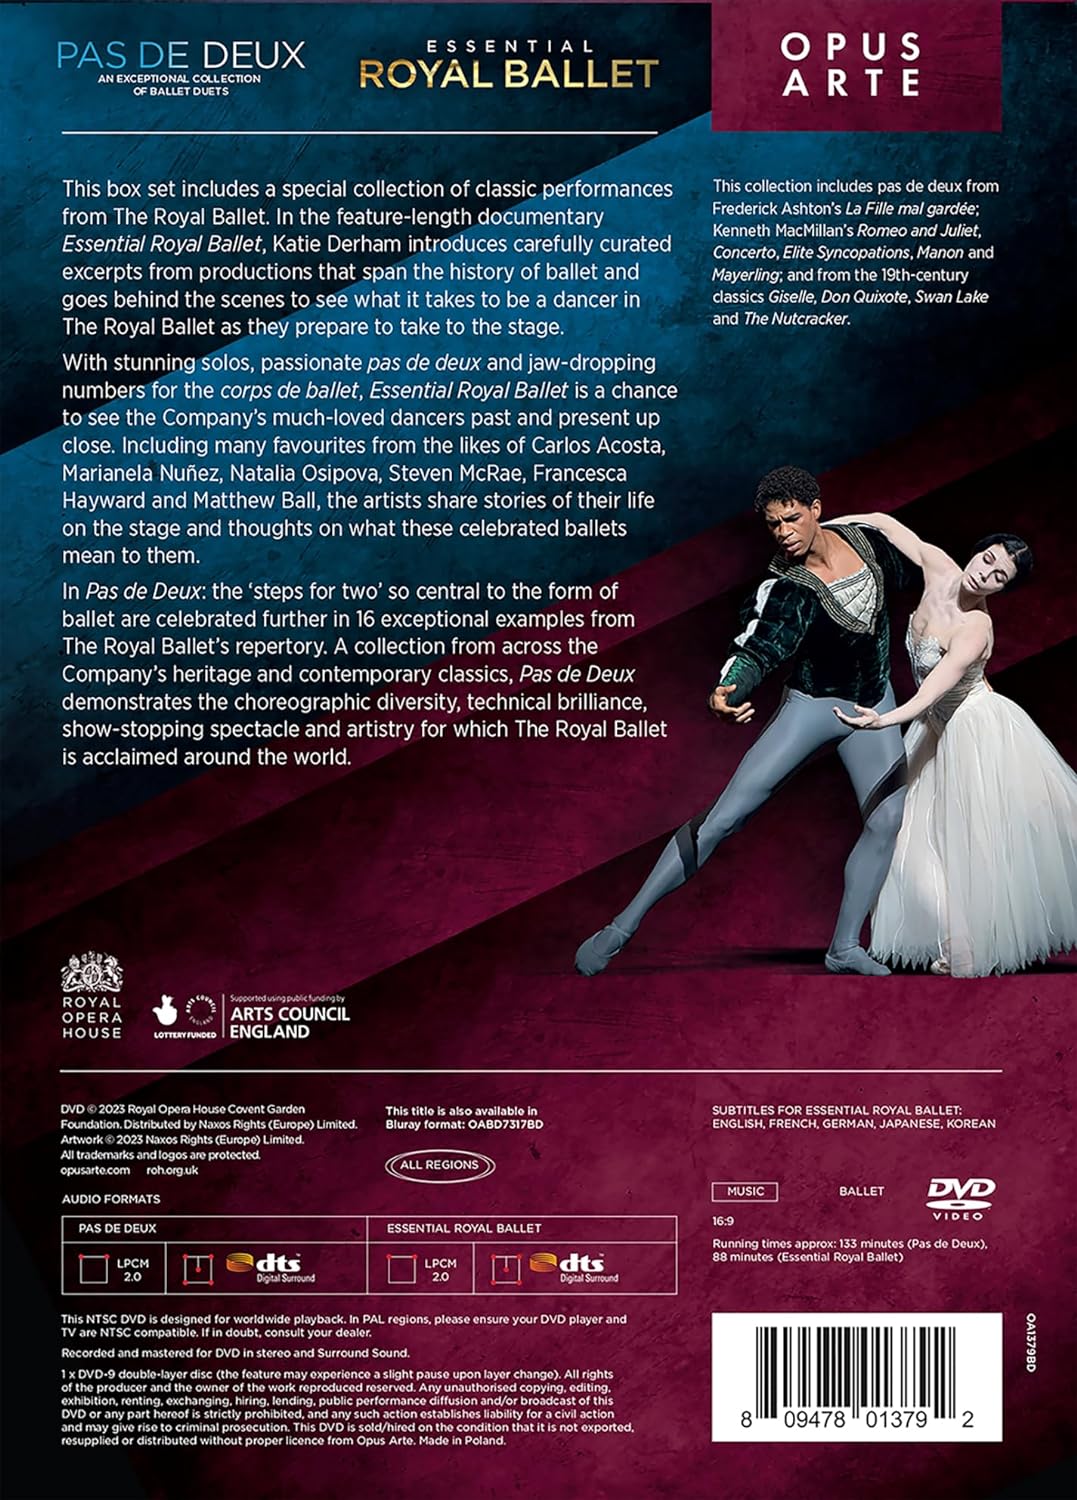 로열발레 '파드되' / 에센셜 로열 발레 (The Royal Ballet - Classics)